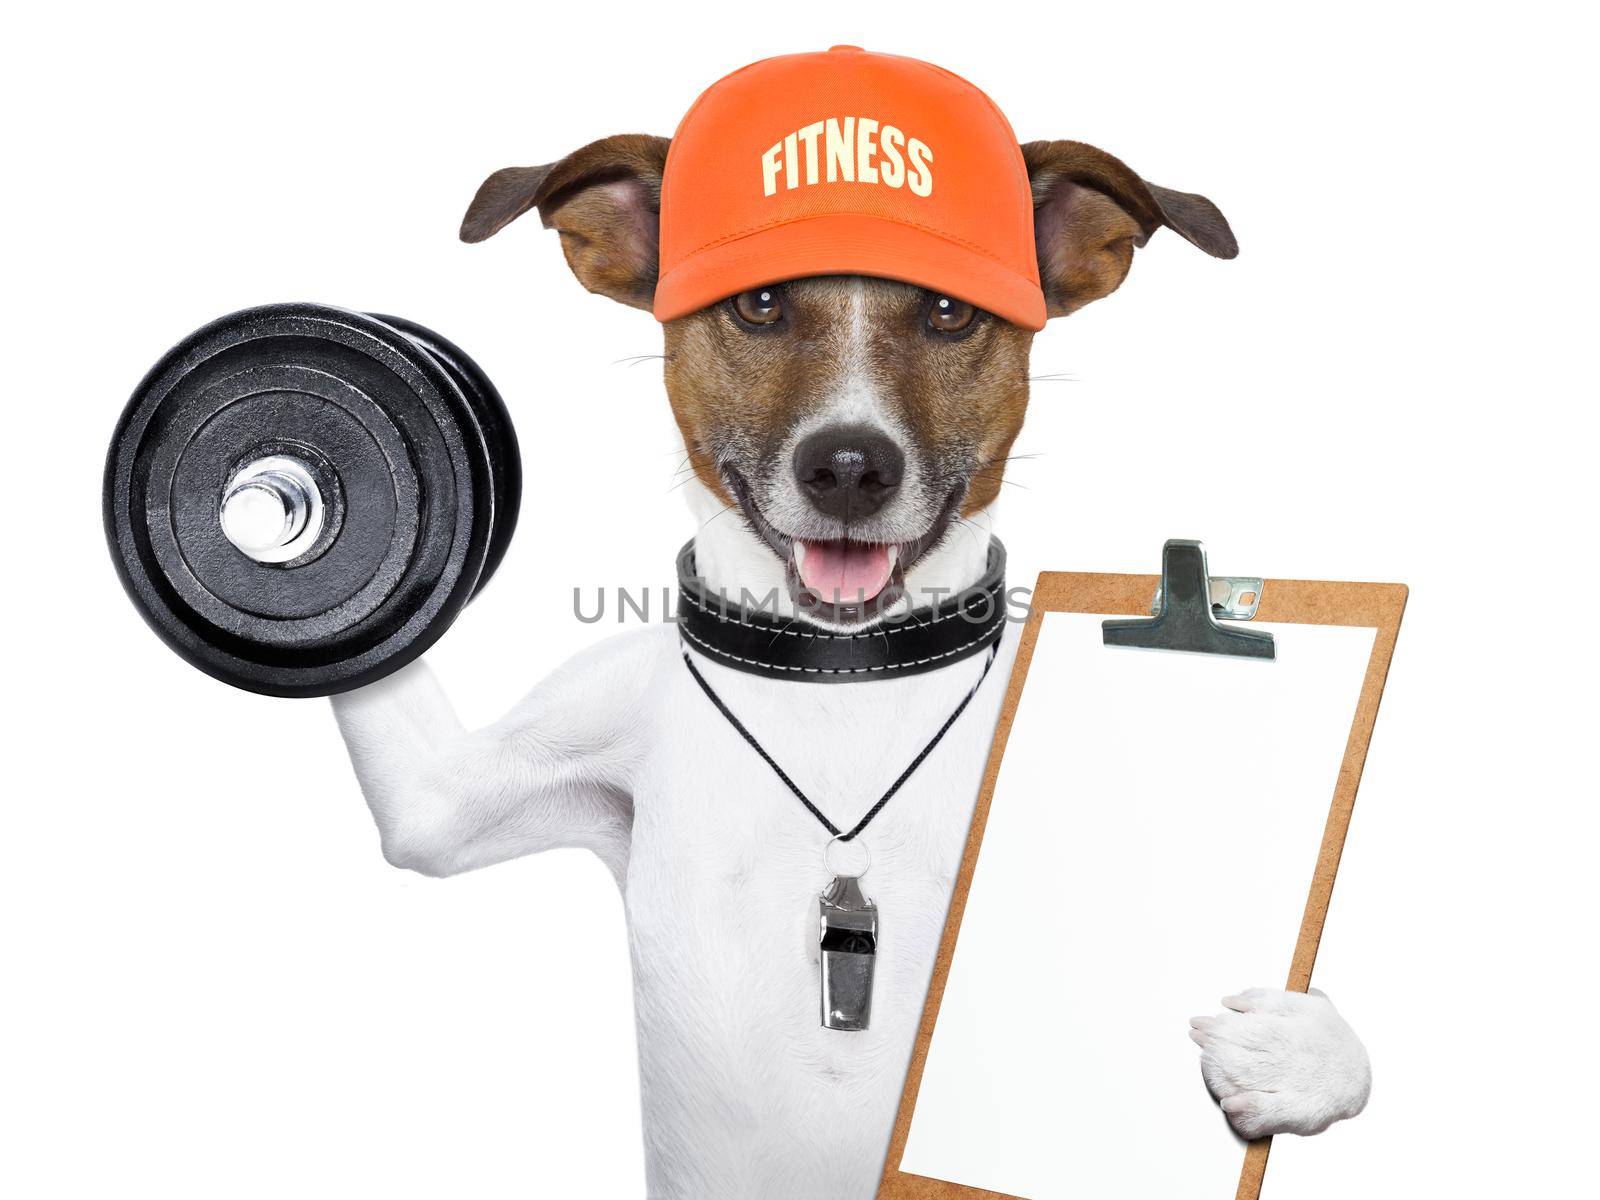 fitness dog by Brosch